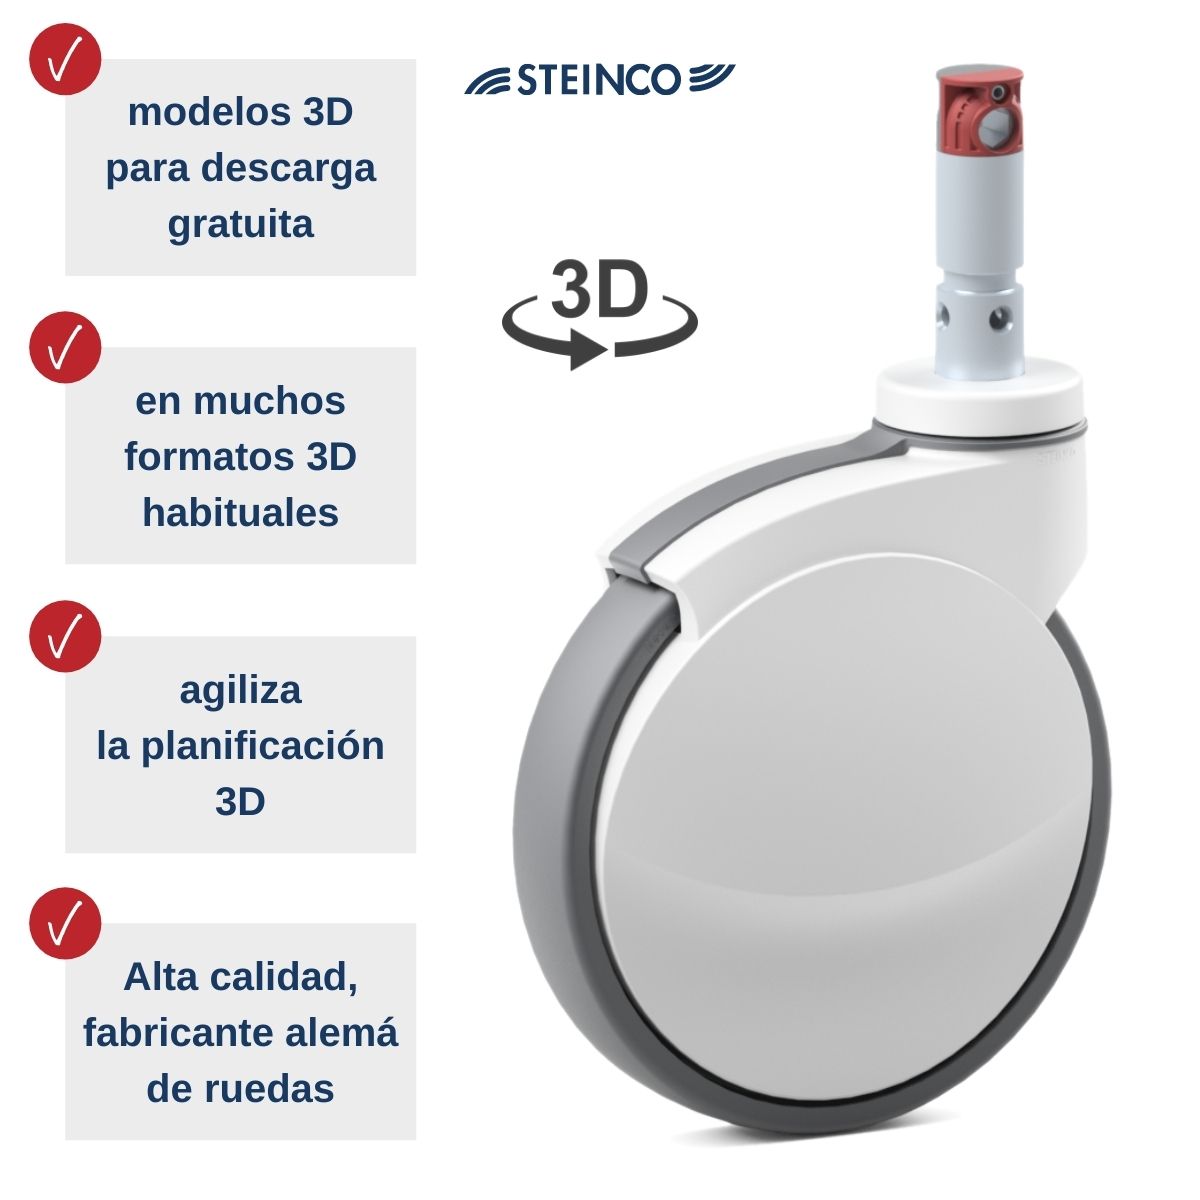 Ruedas Steinco Medical - modelos 3D gratuitos en muchos formatos para planificadores, diseñadores, ingenieros y desarrolladores